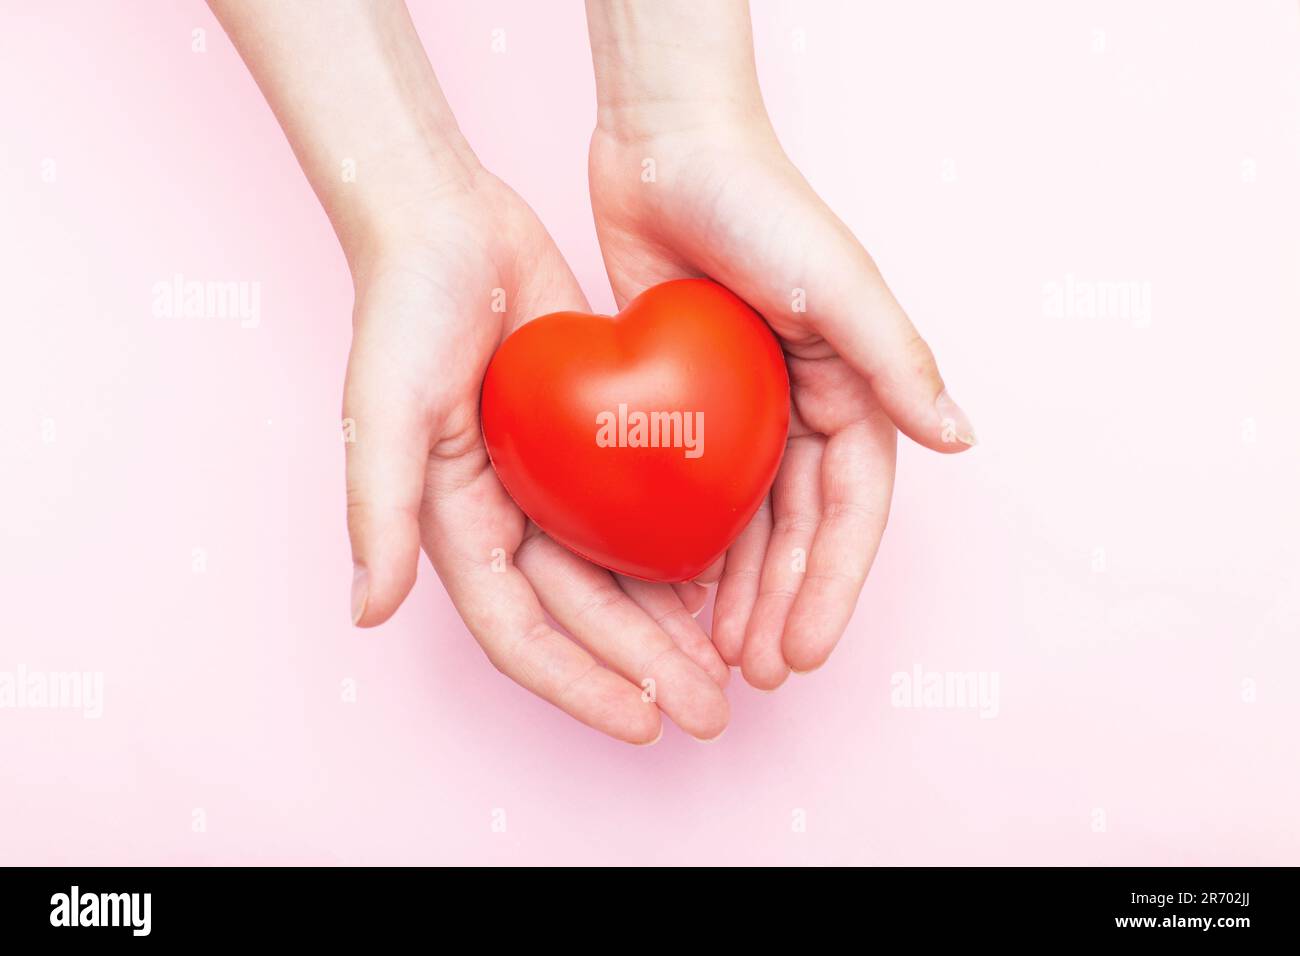 Kinderhände halten ein rotes Herz als Symbol für Pflege, Liebe, Unterstützung und Schutz isoliert auf pinkfarbenem Hintergrund. Kindergesundheitskonzept. Stockfoto